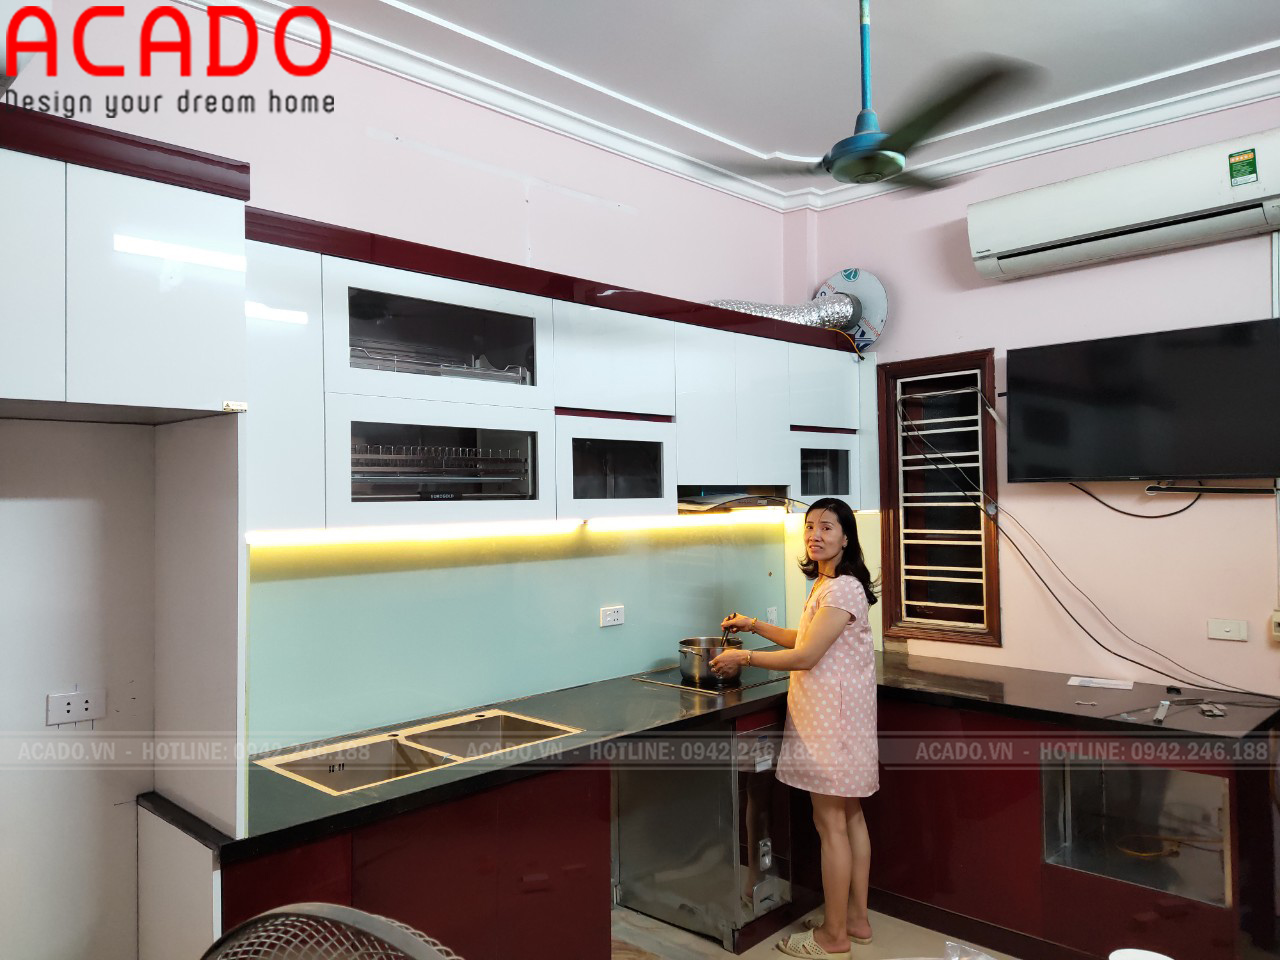 Hoàn thiện tủ bếp cho gia đình anh Hoàn - Cảm ơn Gia đình anh Hoàn đã tin tường và lựa chọn nội thất ACADO